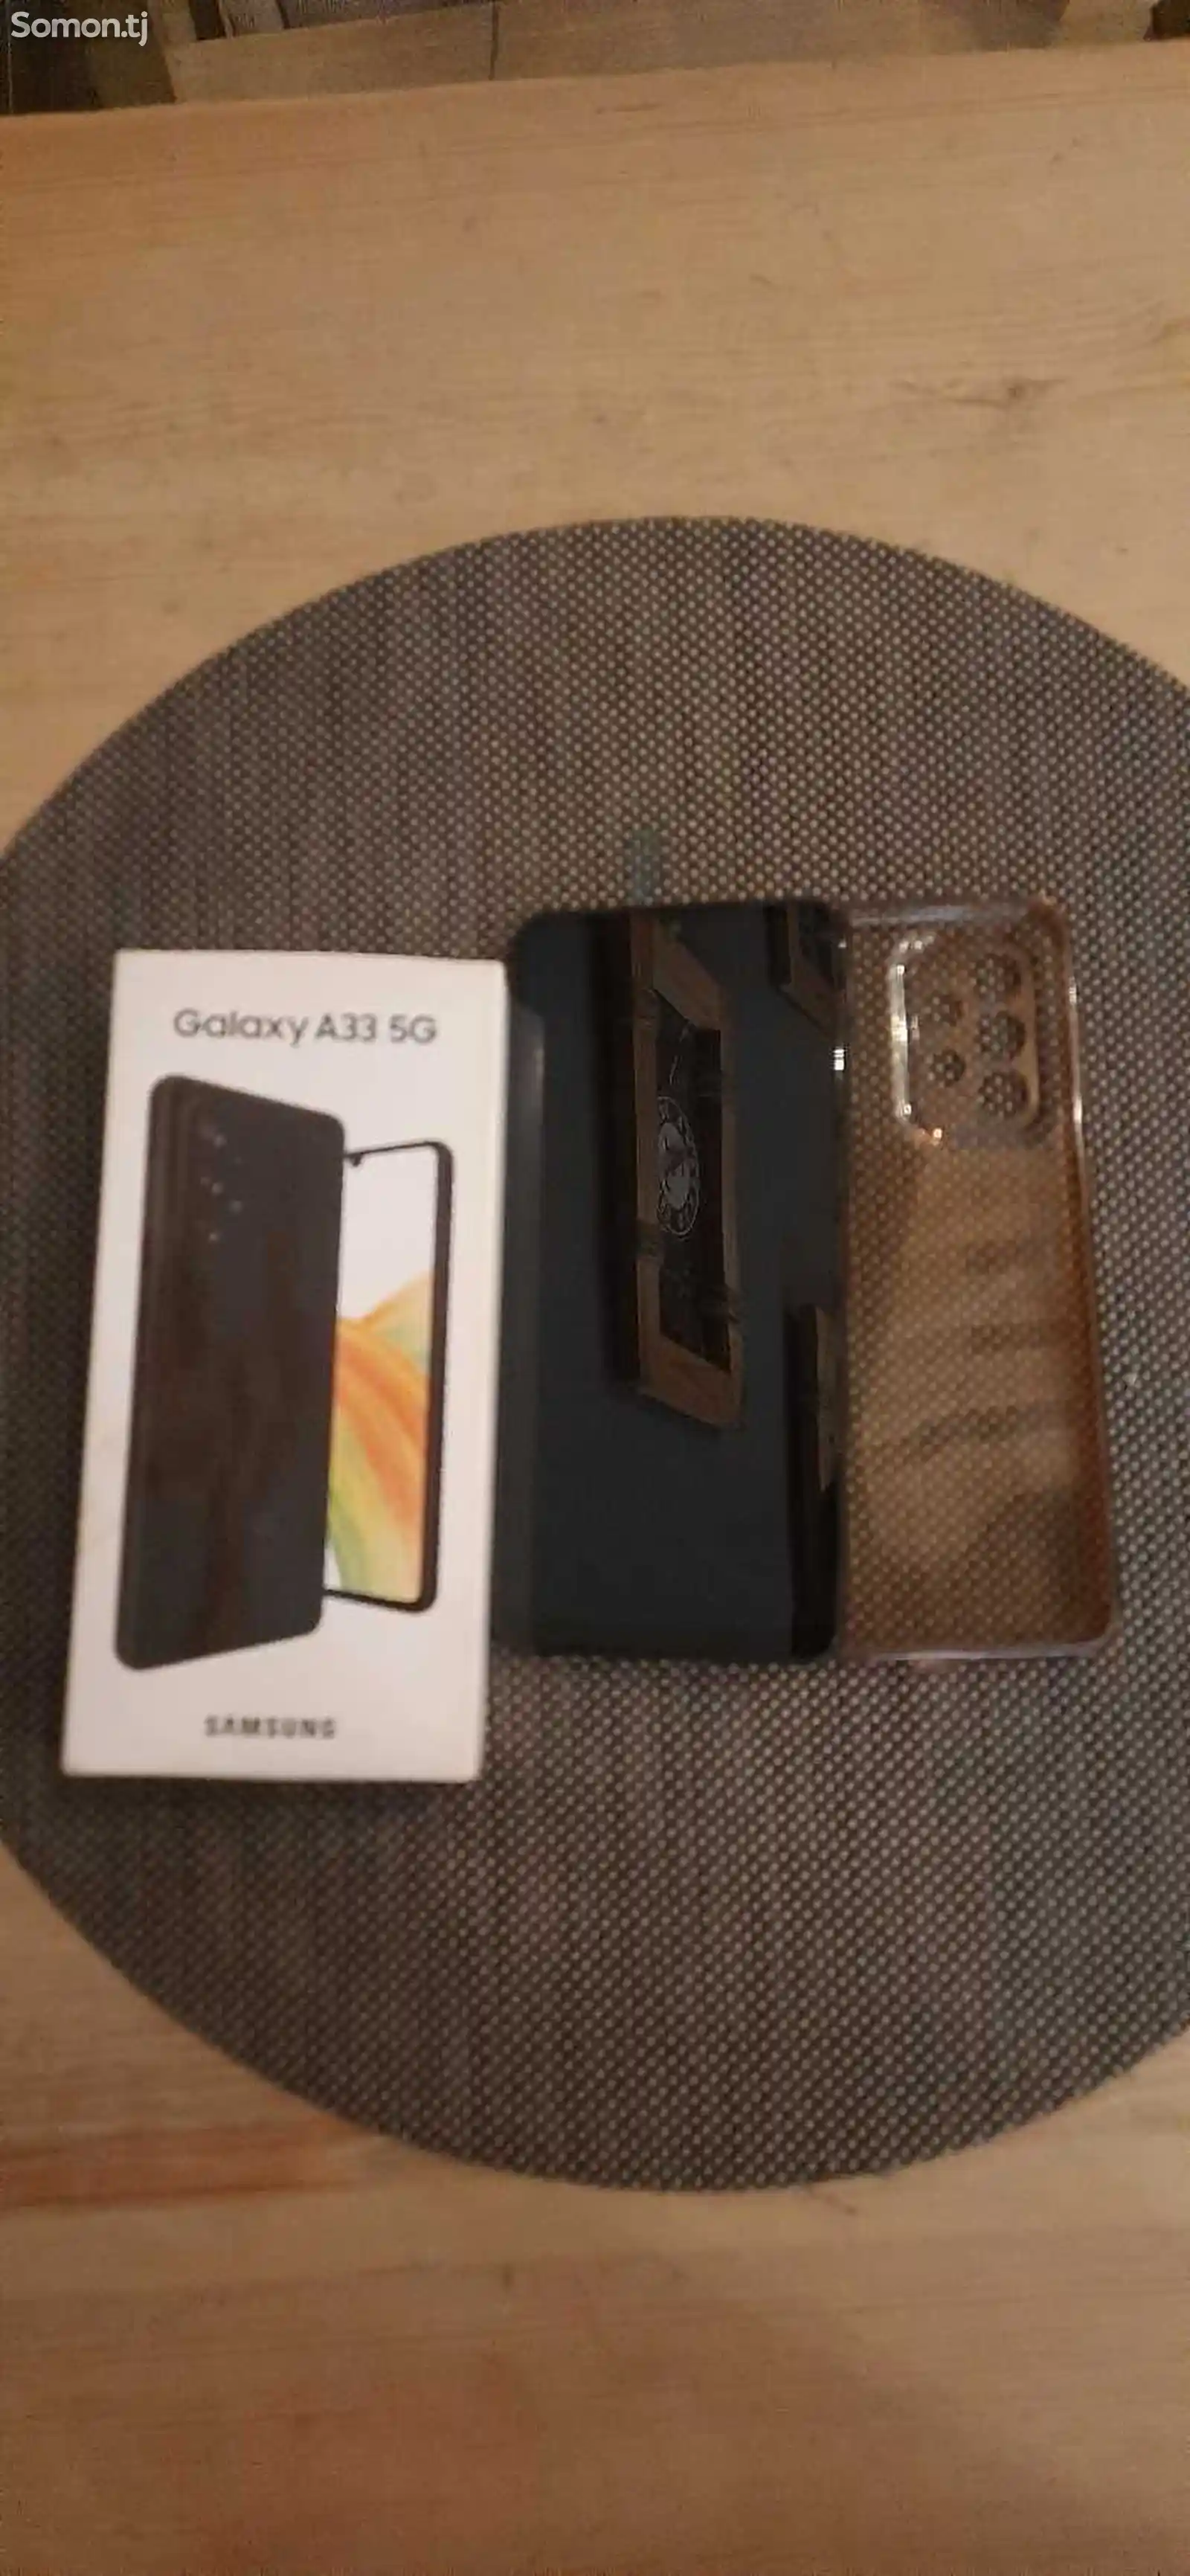 Samsung Galaxy A33 5G-1